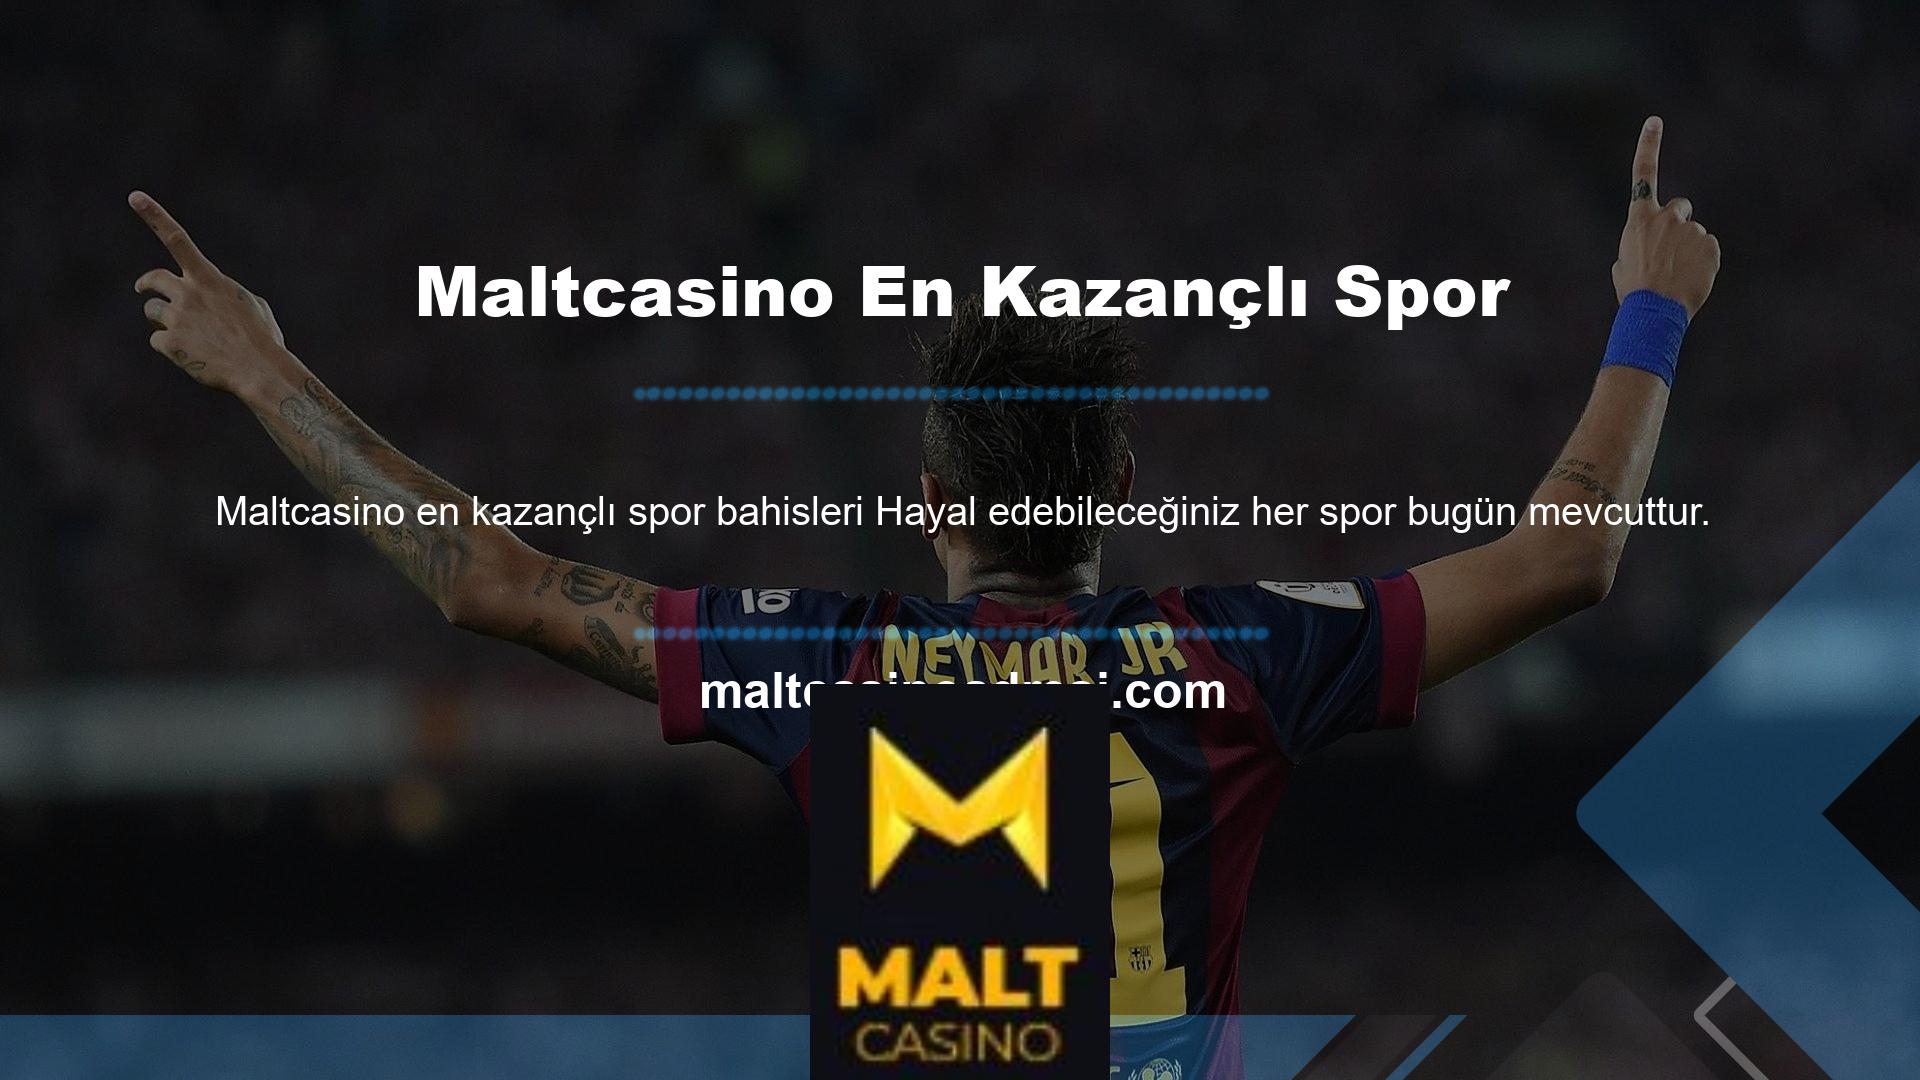 Spor bahisleri, spor etkinliklerinin sonucuna yönelik bahisleri ifade Maltcasino en kazançlı spor 